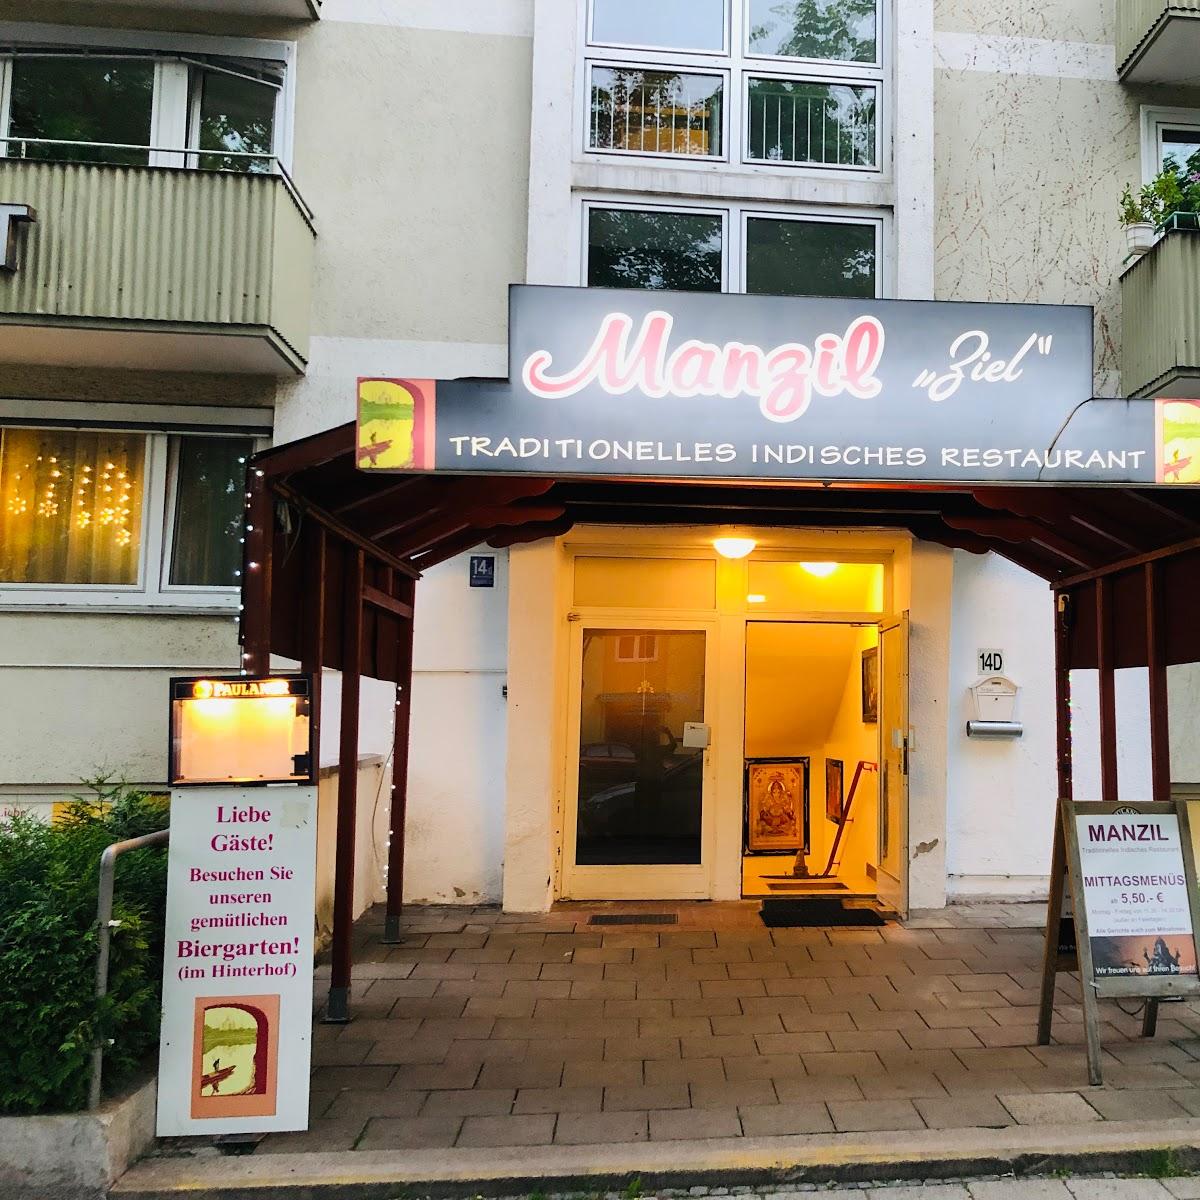 Restaurant "Manzil - Indisches Restaurant" in München